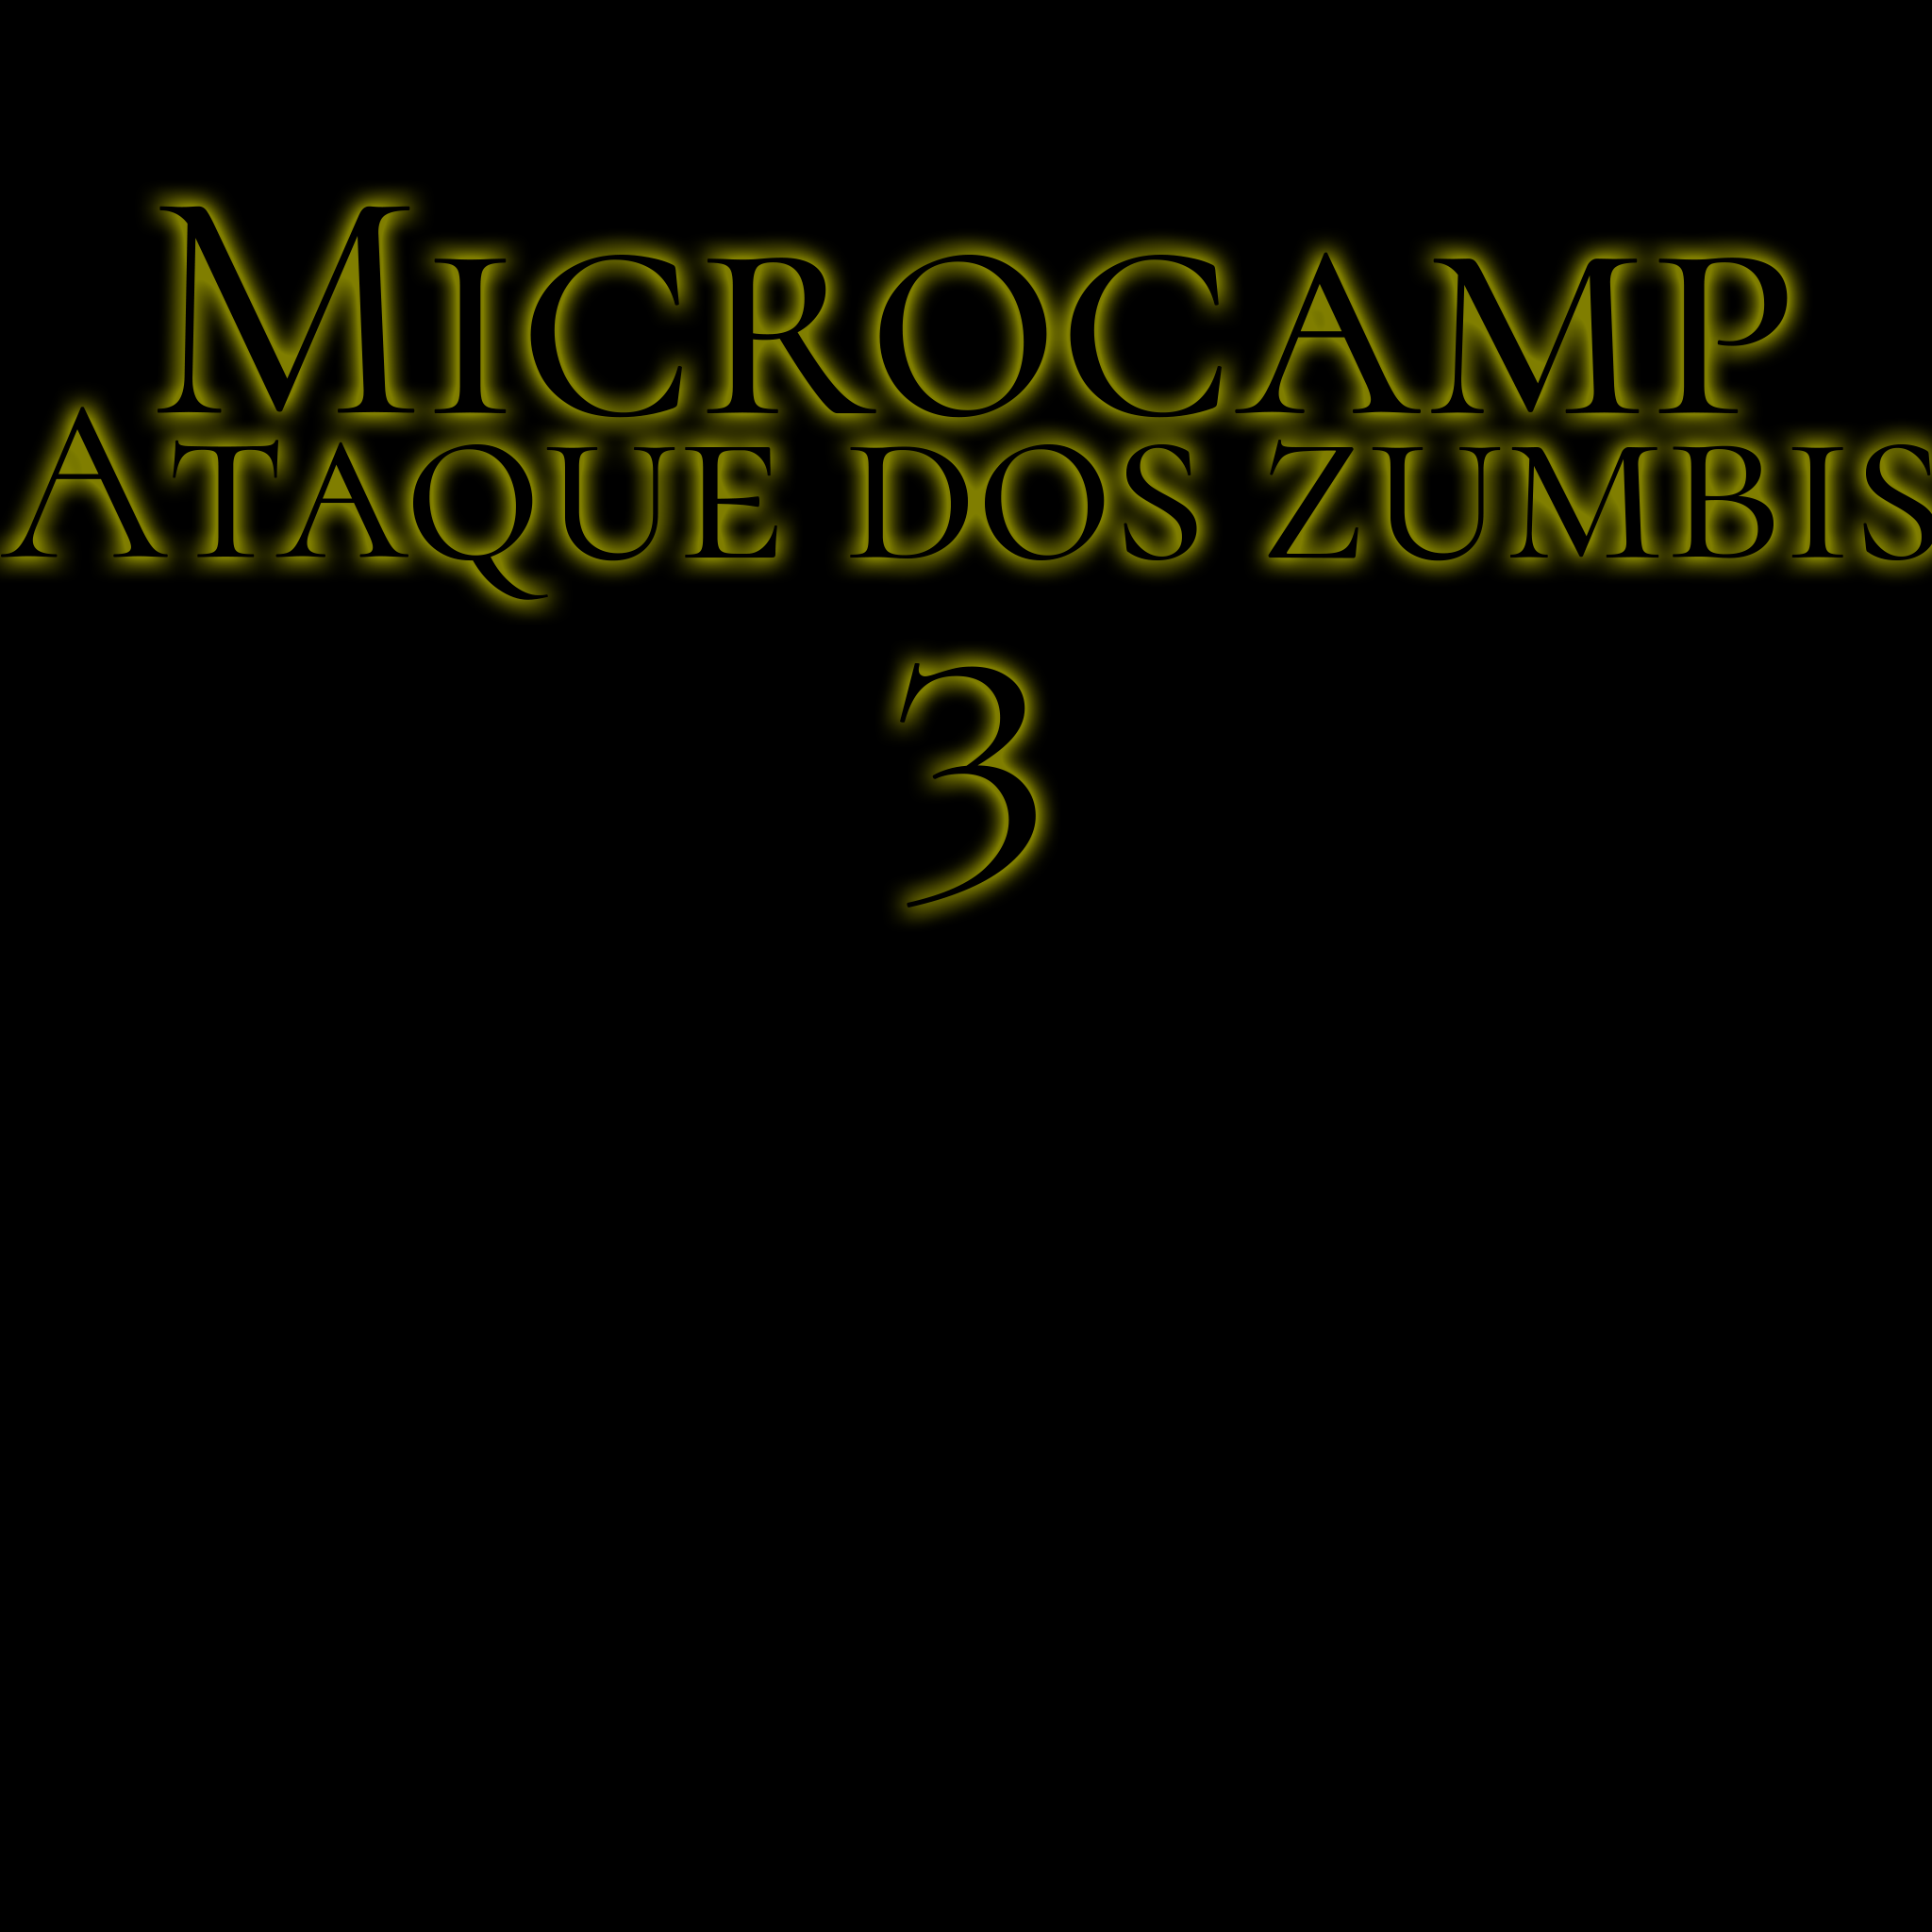 Microcamp Ataque dos Zumbis 3